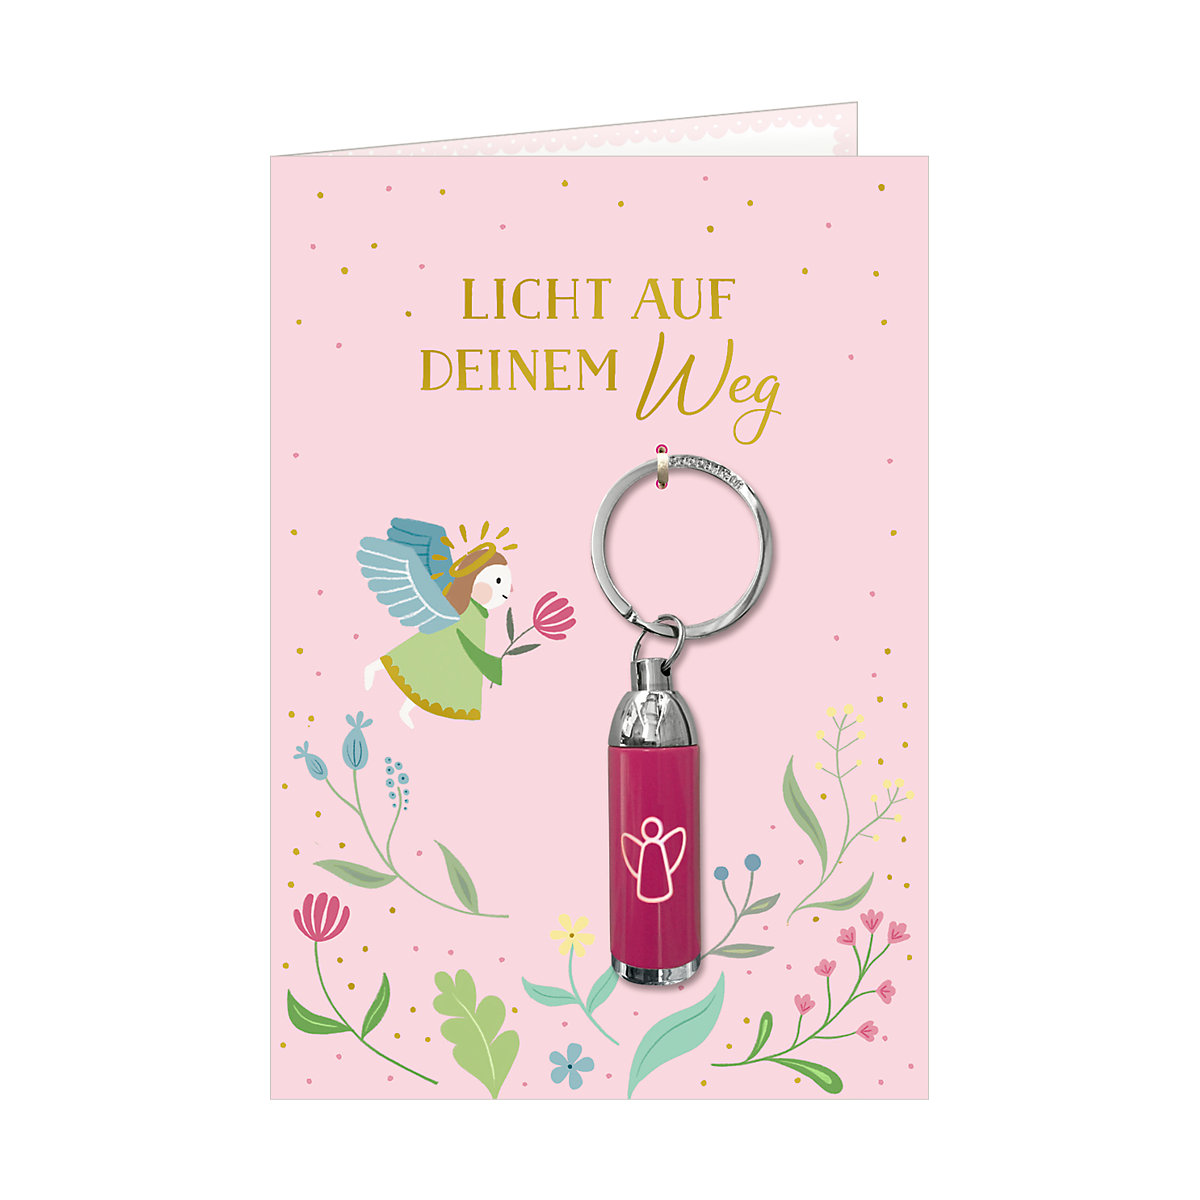 Coppenrath Verlag Grußkarte Licht auf deinem Weg Engel inkl. Taschenlampe